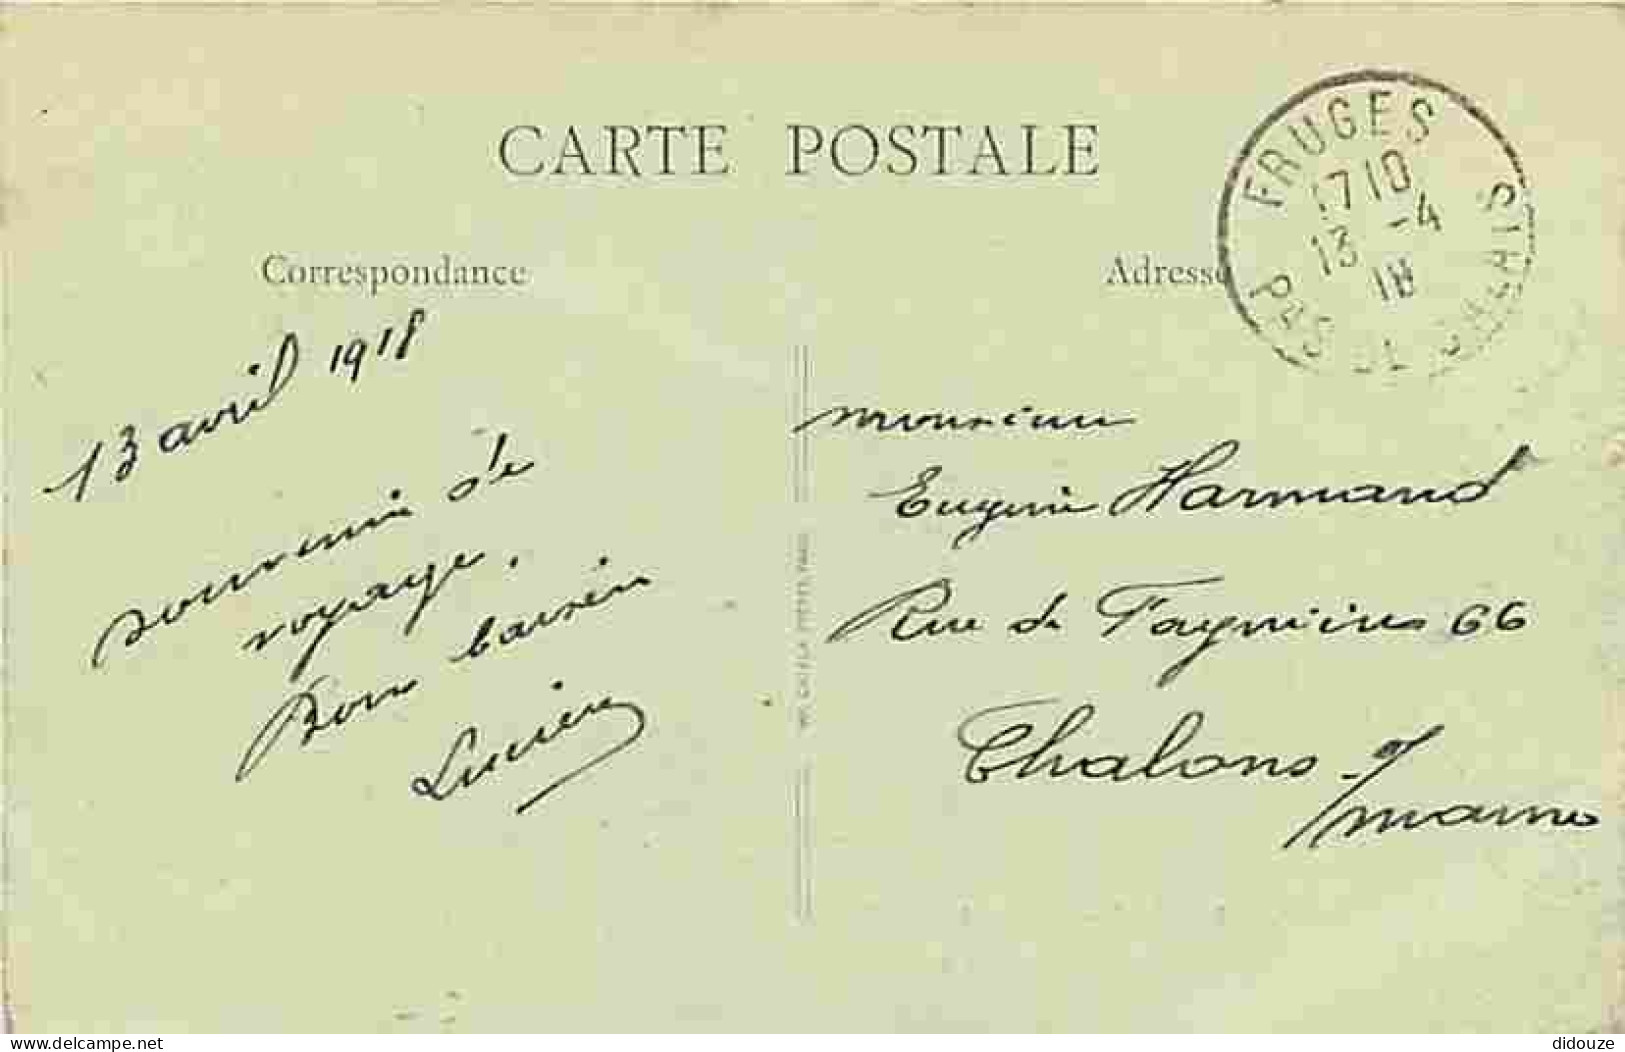 62 - Fruges - Entrée De Fruges Route De Montreuil - Animé - Ecrite En 1918 - CPA - Voir Scans Recto-Verso - Fruges